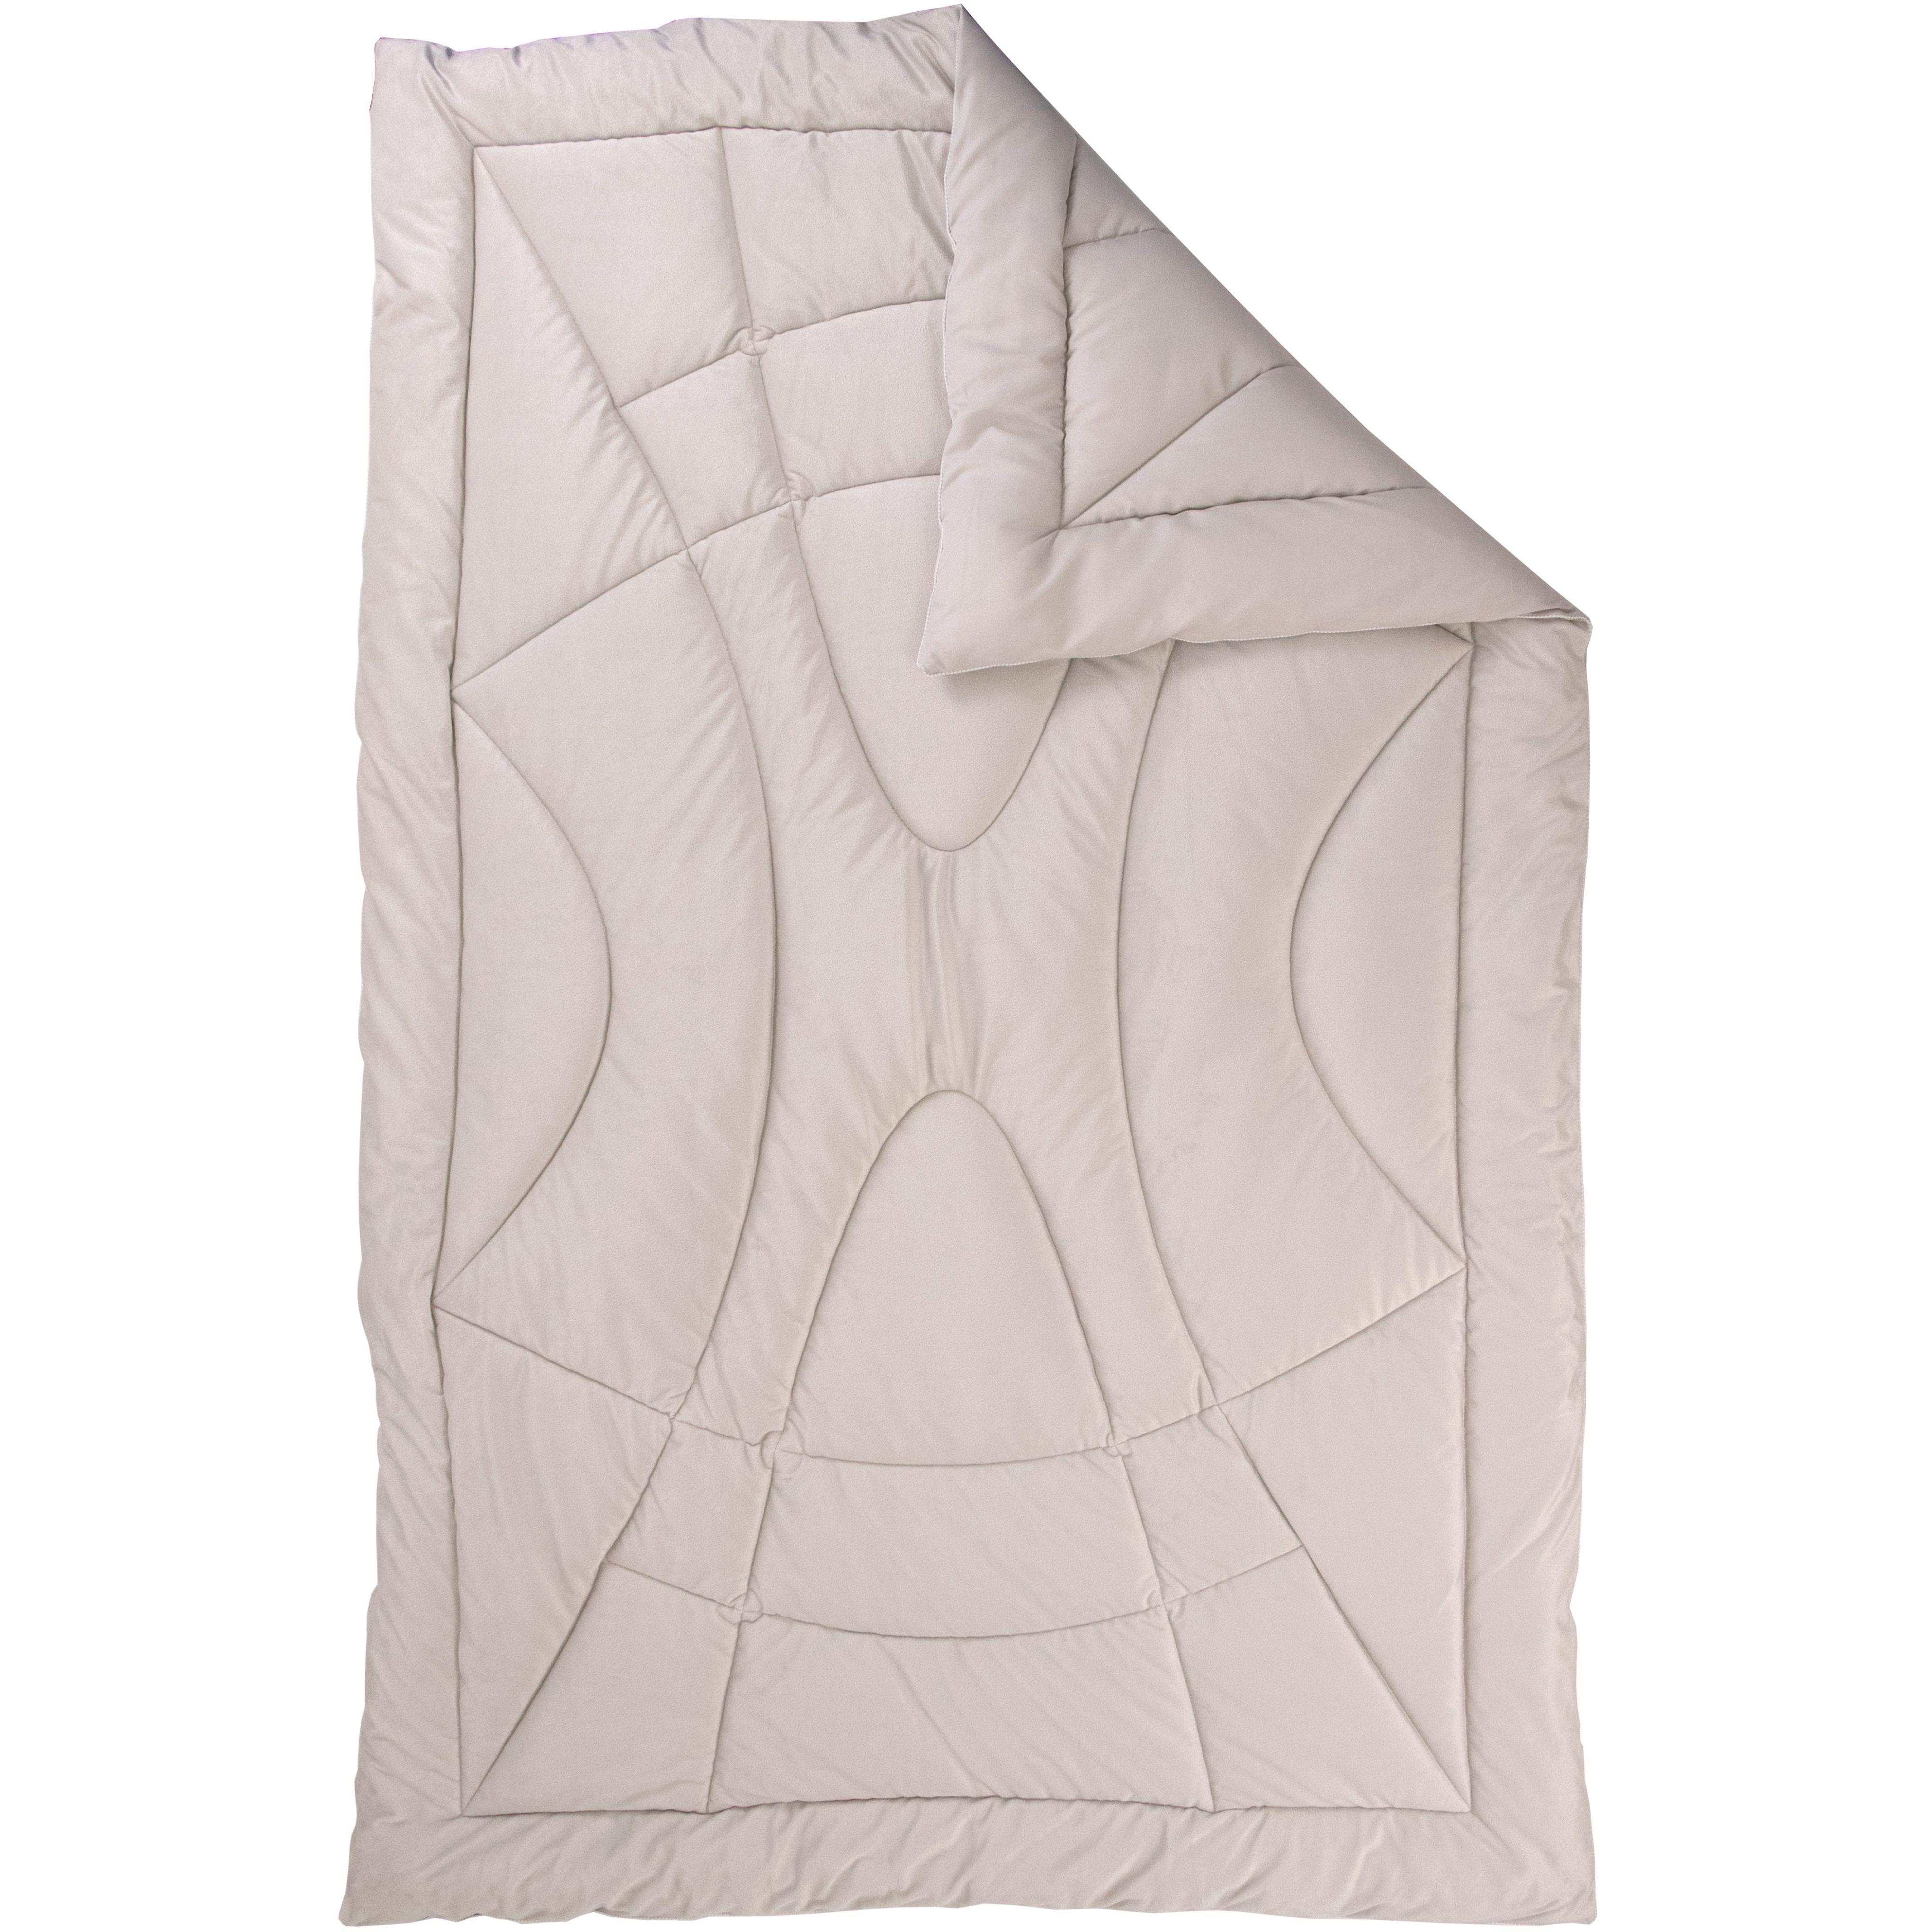 Набор силиконовый Руно Soft Pearl, бежевый: одеяло, 205х140 см + подушка, 50х70 см (924.55_Soft Pearl) - фото 5